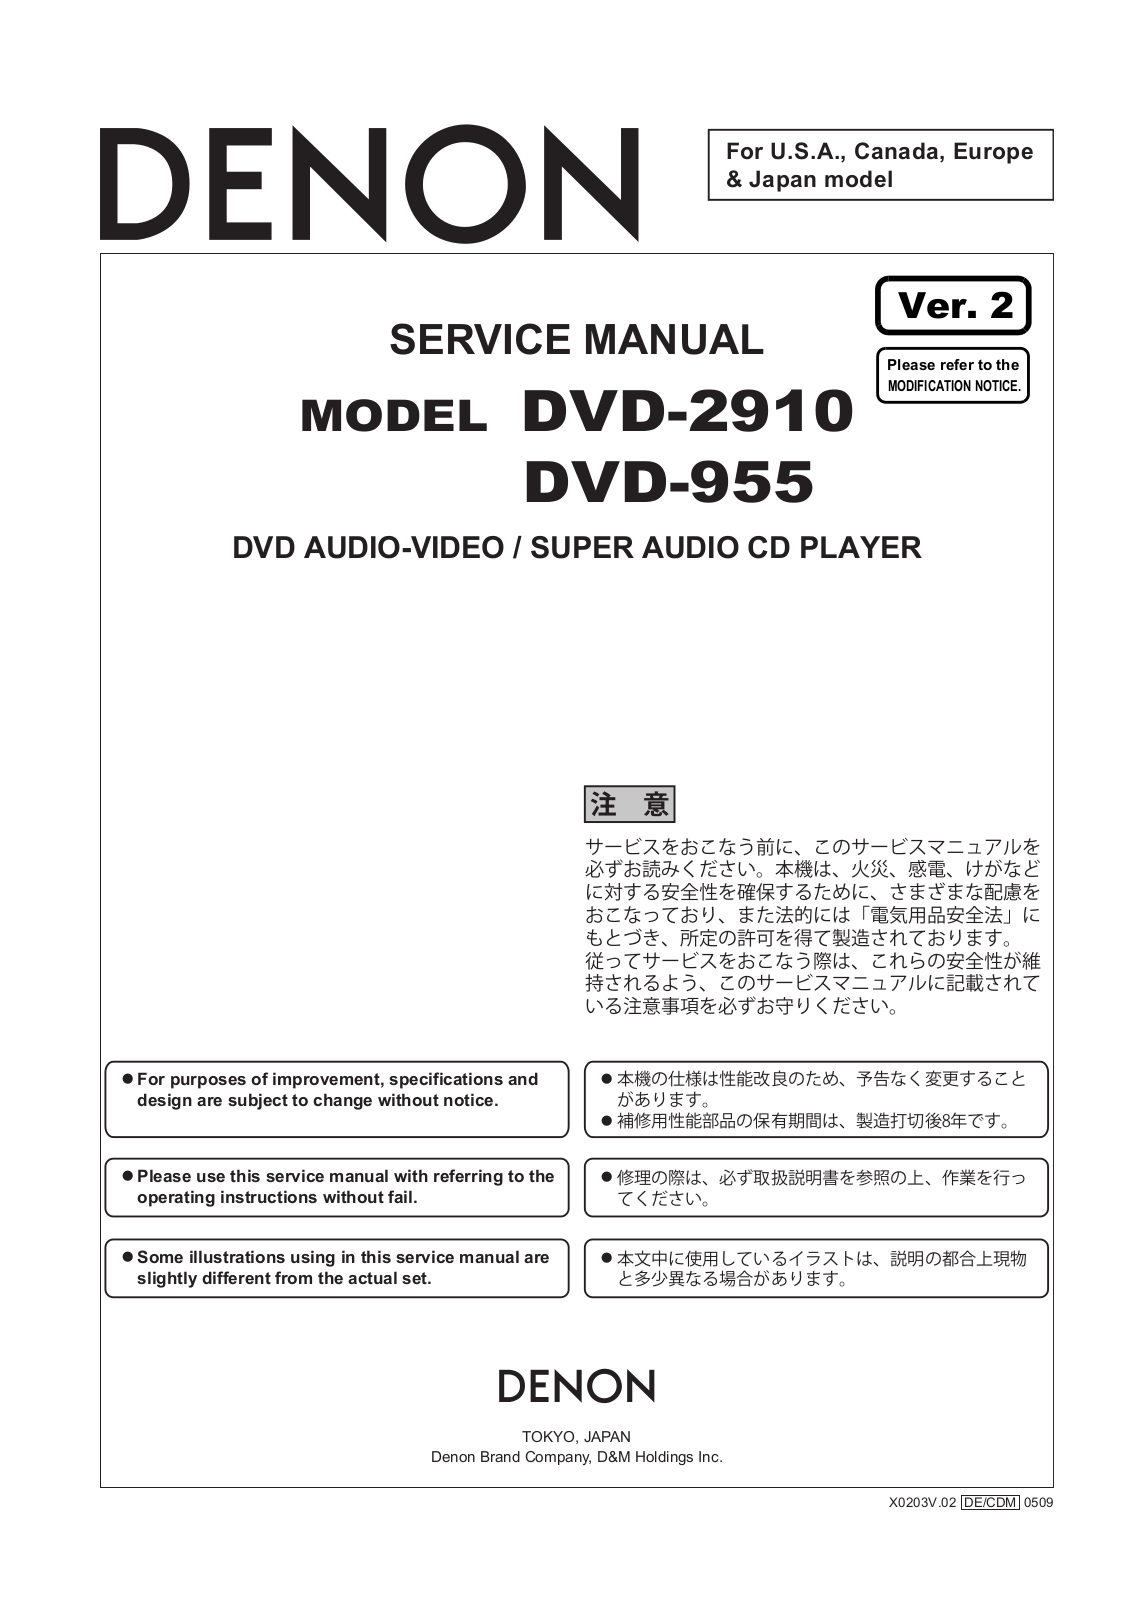 Denon DVD-2910 Service Manual